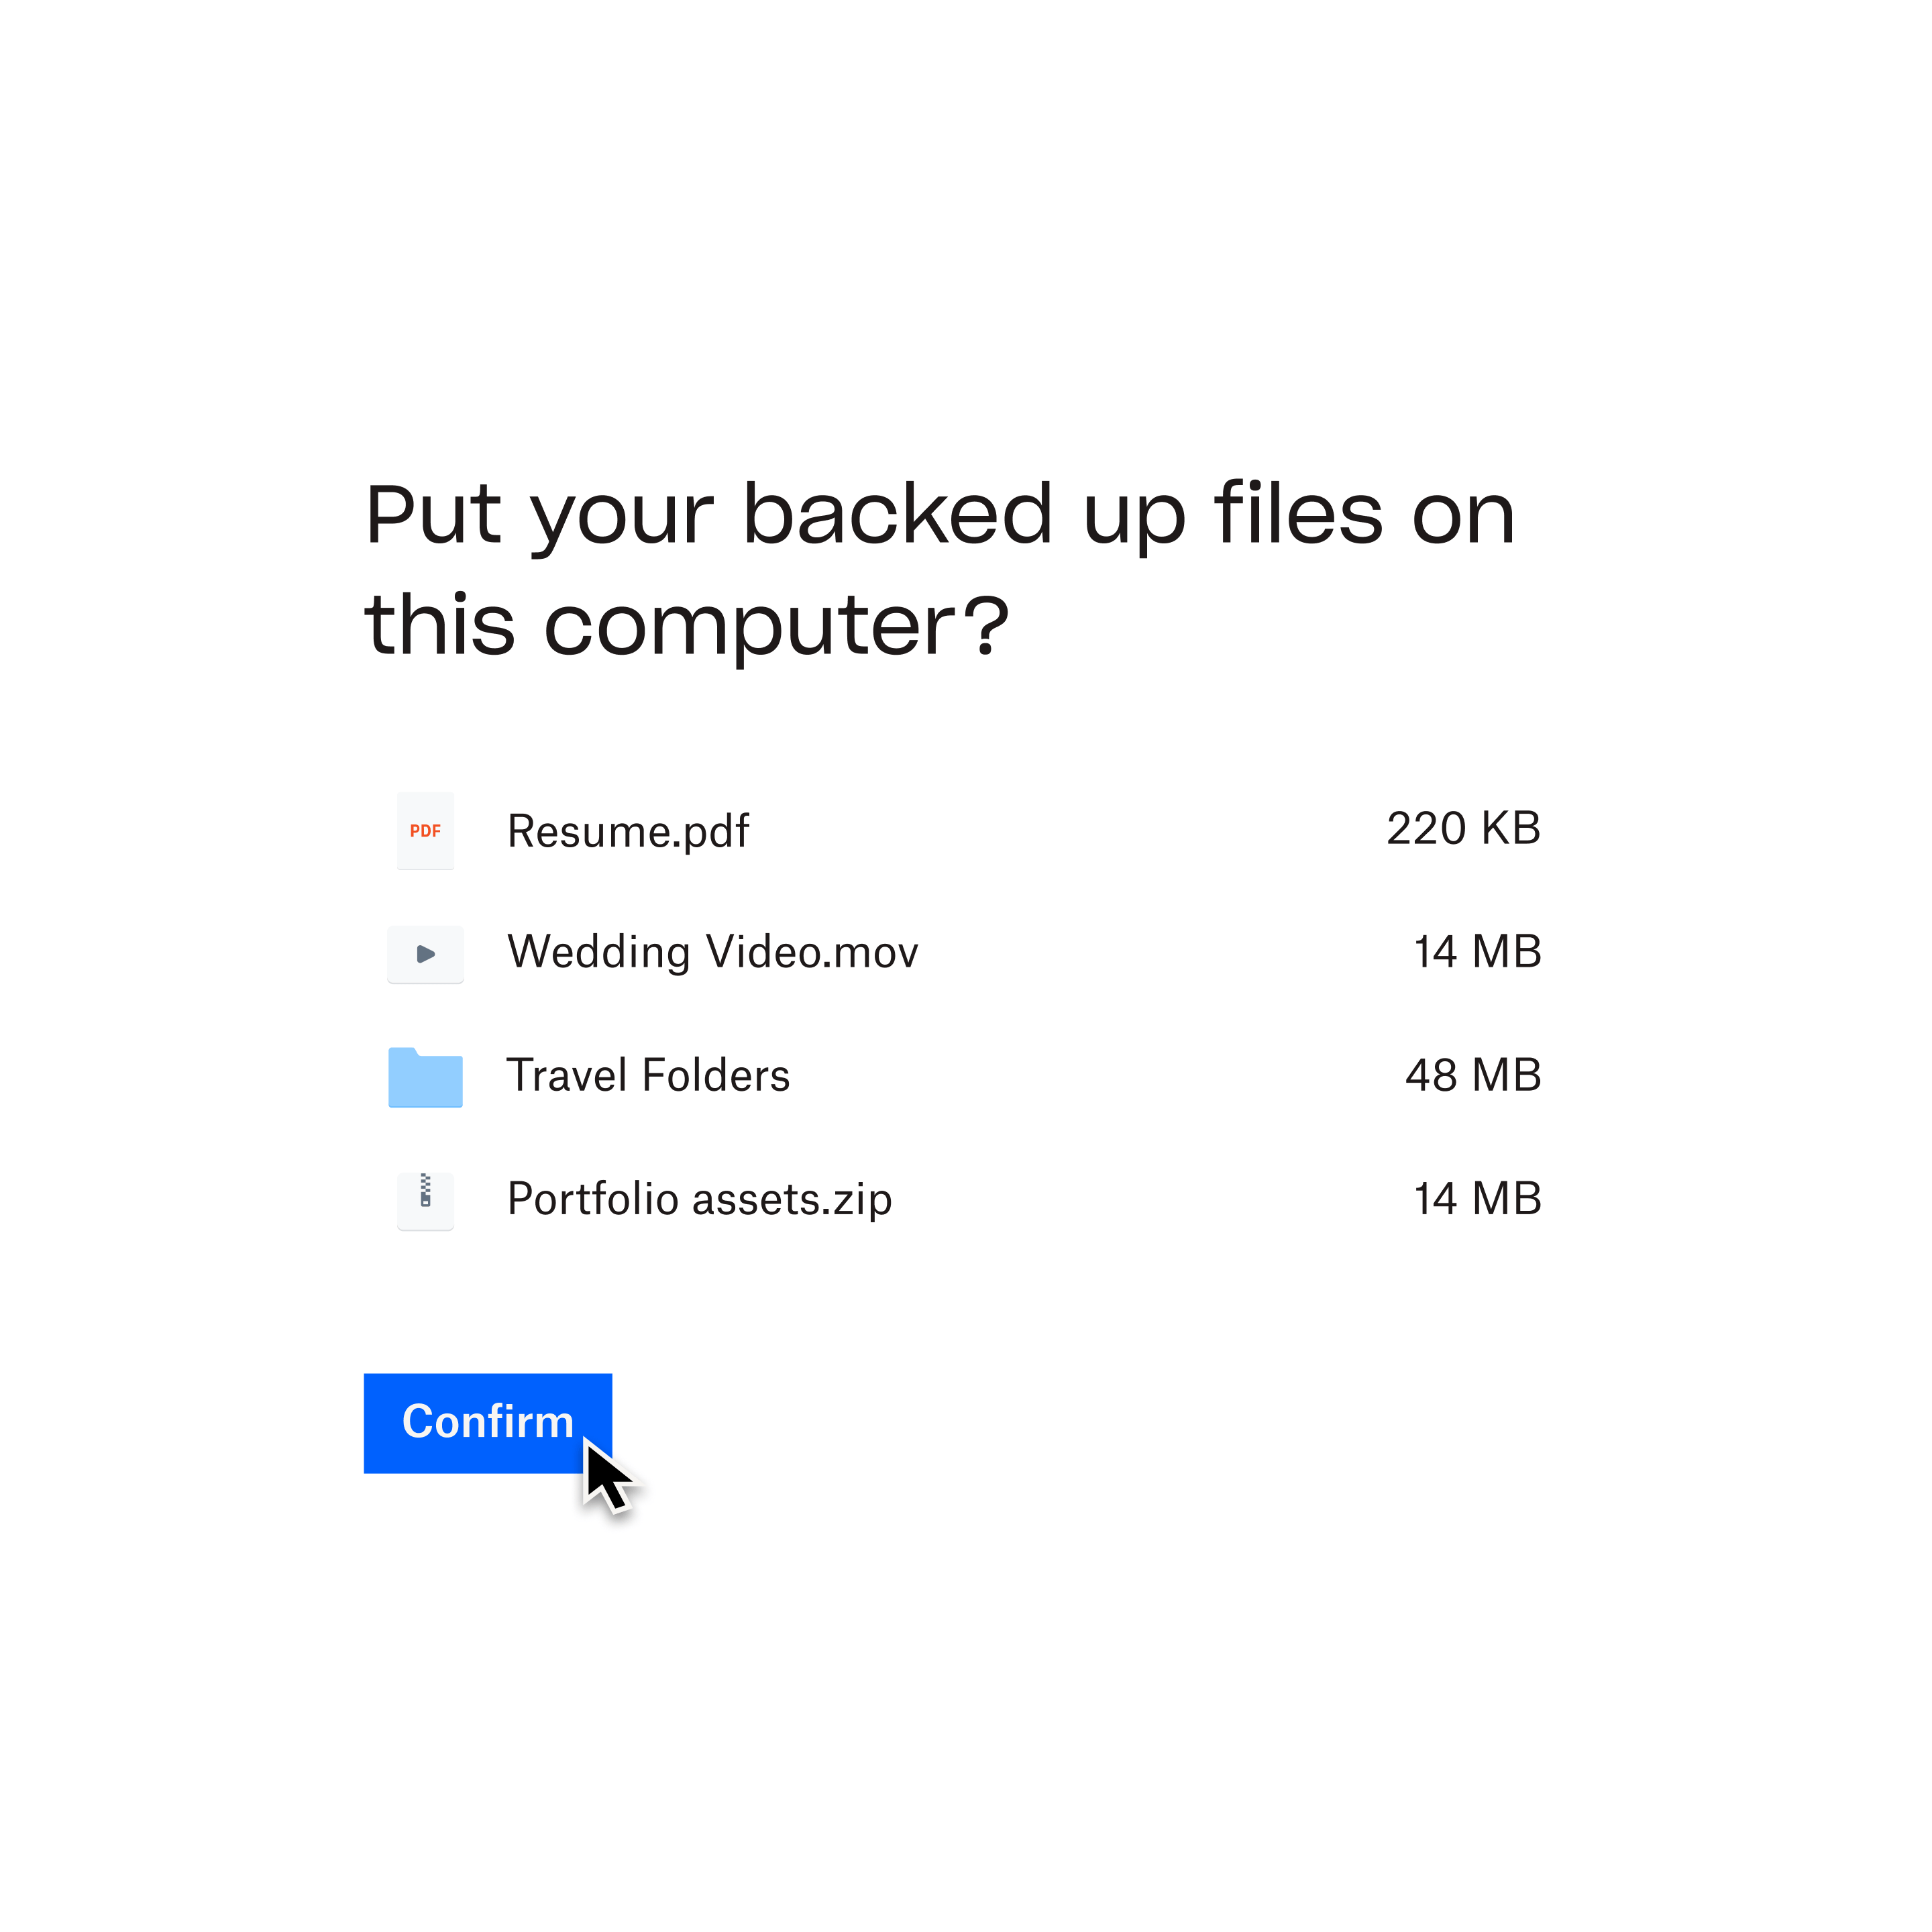 Uma mensagem rápida do Dropbox Backup, perguntando se você gostaria de colocar seus arquivos copiados em backup no computador selecionado. Um cursor do mouse paira sobre um botão denominado "Confirmar".